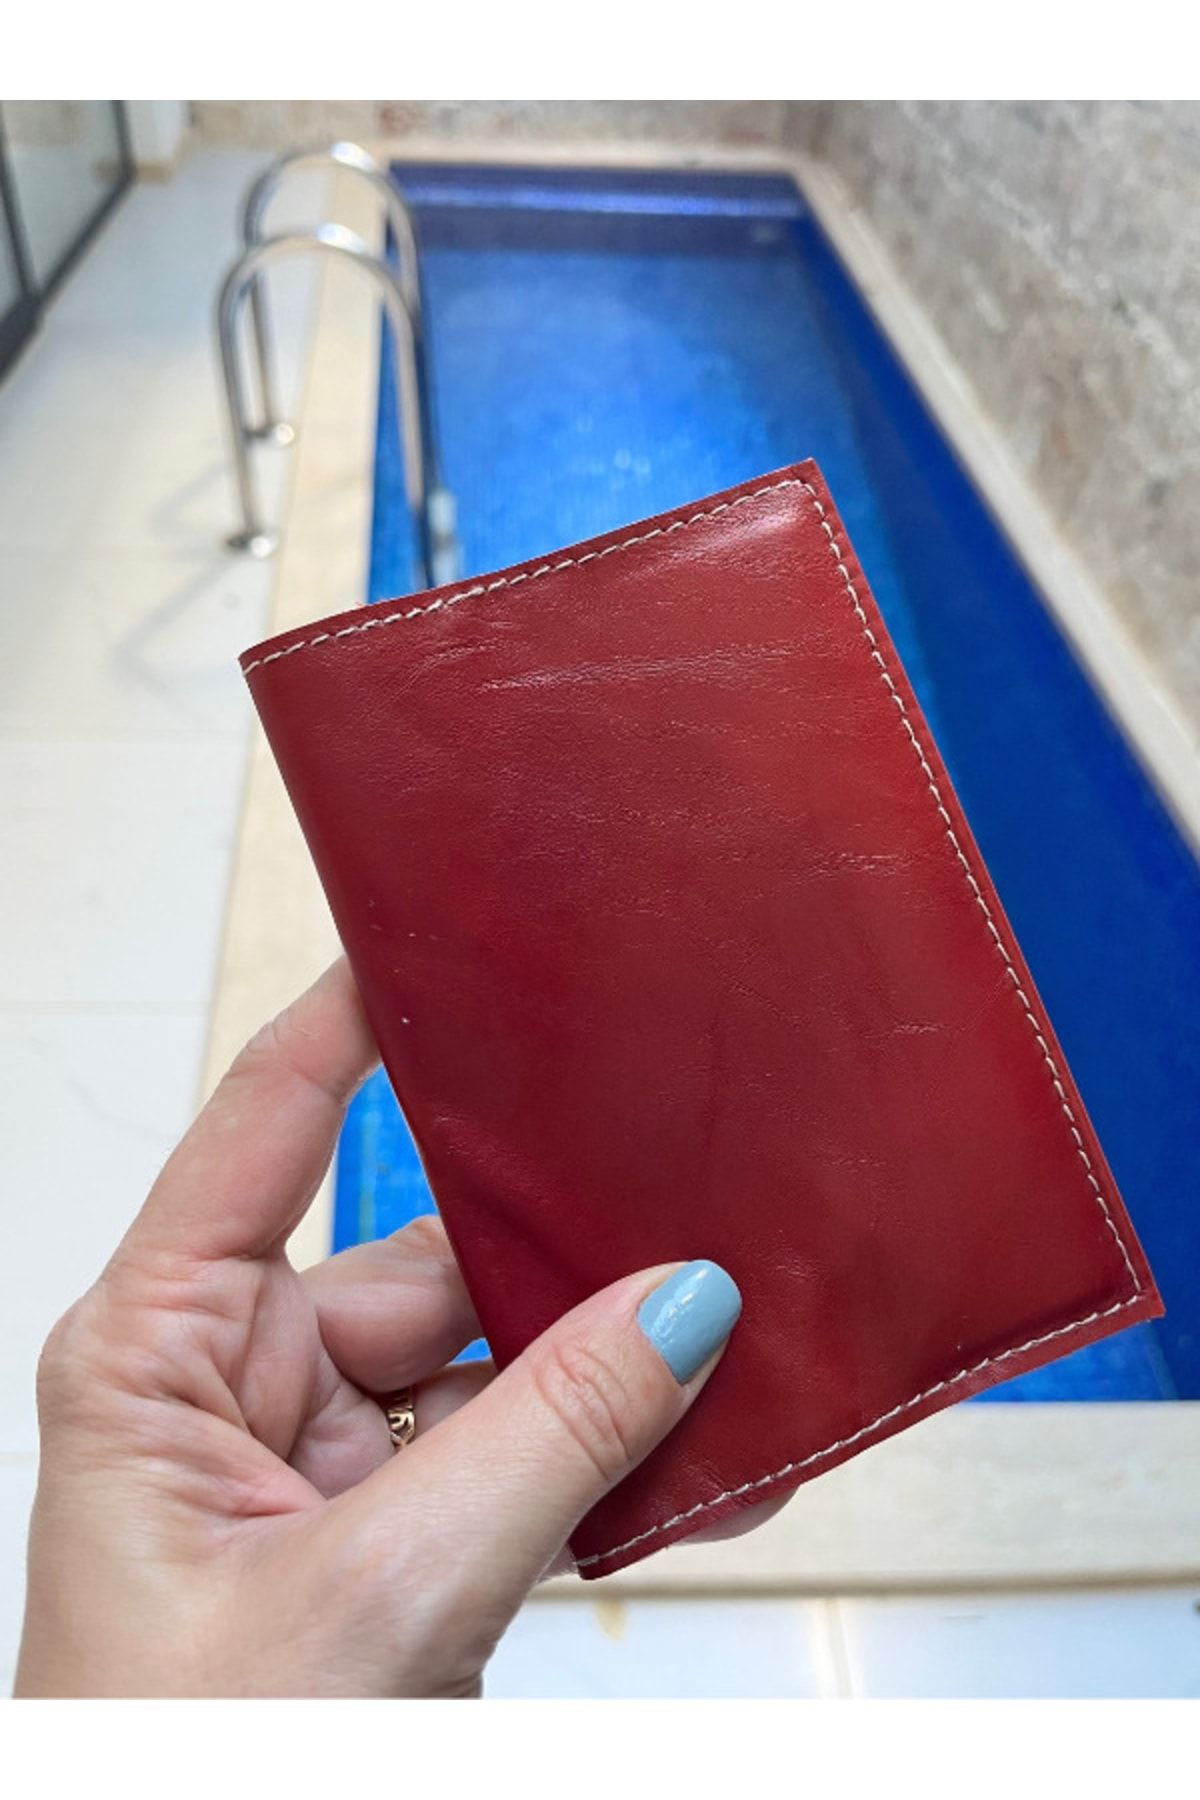 Pinkylola Seyahat Serisi Koyu Kırmızı Hakiki Deri Pasaport Kılıfı (SADECE 2 ADET ÜRETİLDİ)